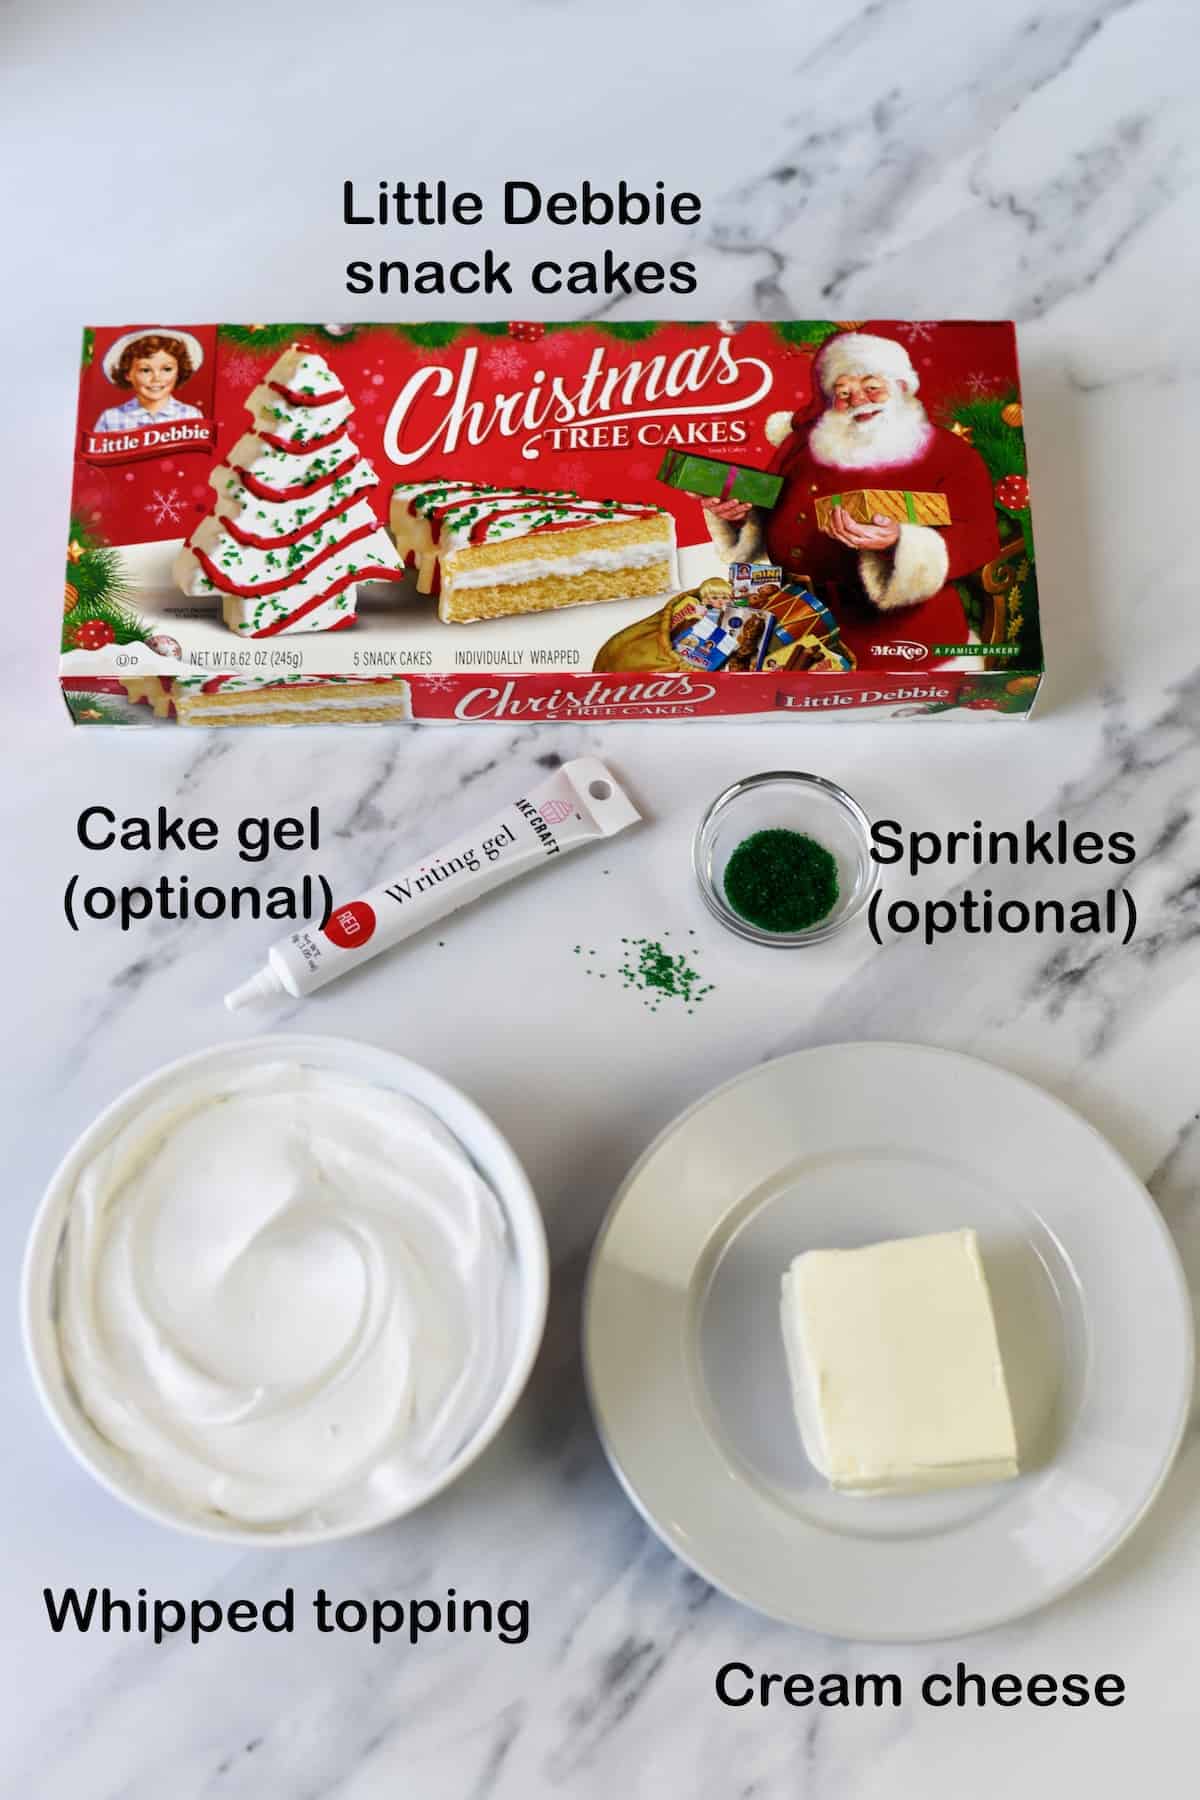 Ingredients for Little Debbie Christmas tree cake dip.